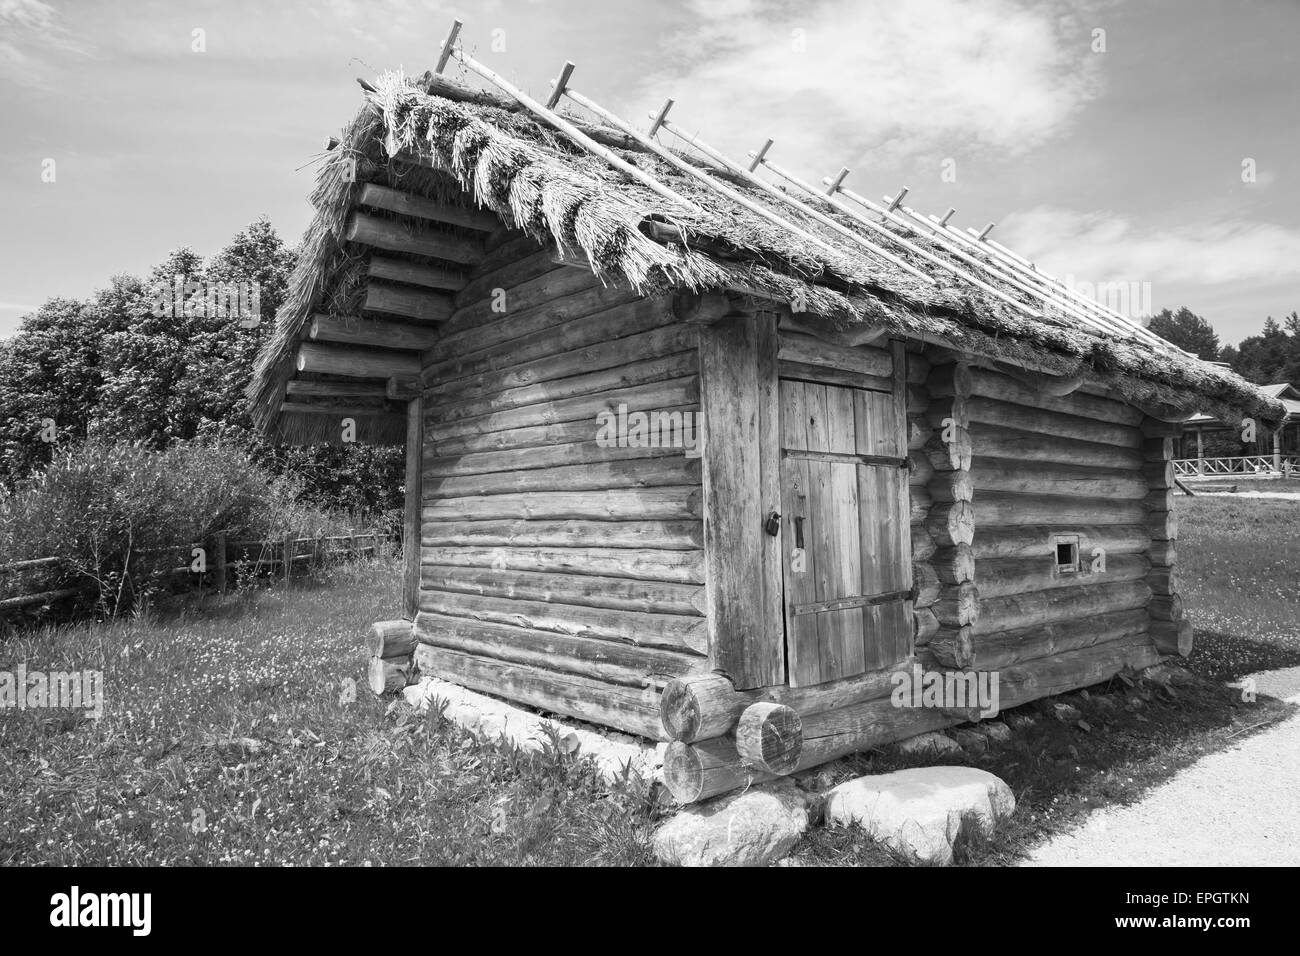 Ejemplo de arquitectura rural de madera, baño ruso pequeño edificio típico, fotografía en blanco y negro Foto de stock